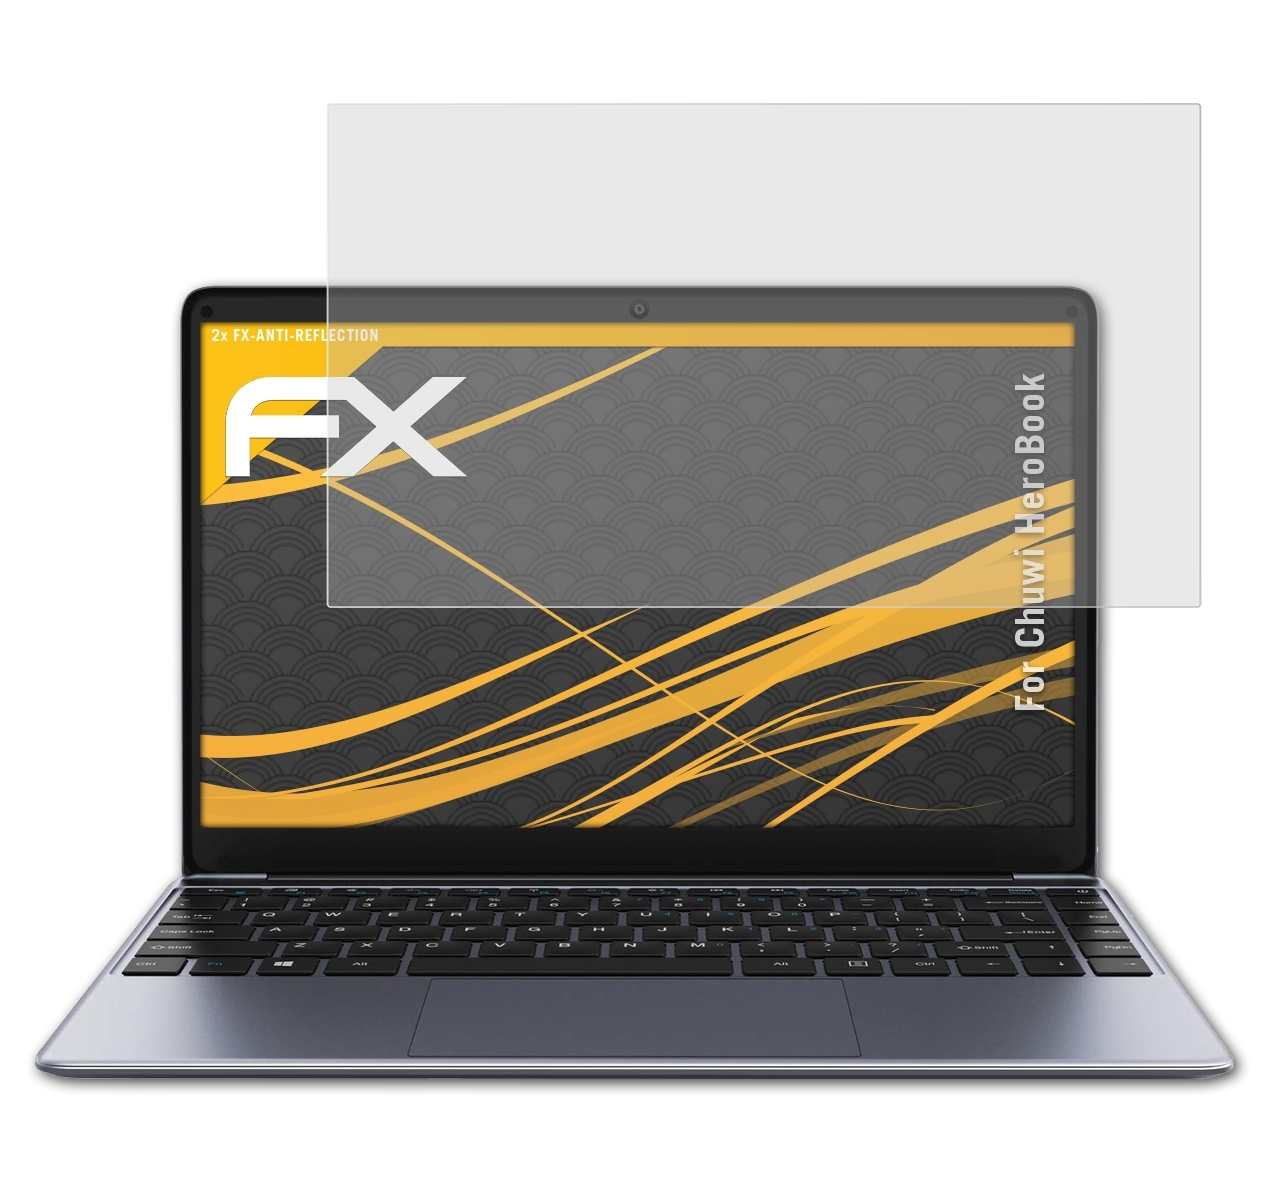 ATFOLIX 2x FX-Antireflex Displayschutz(für Chuwi HeroBook)